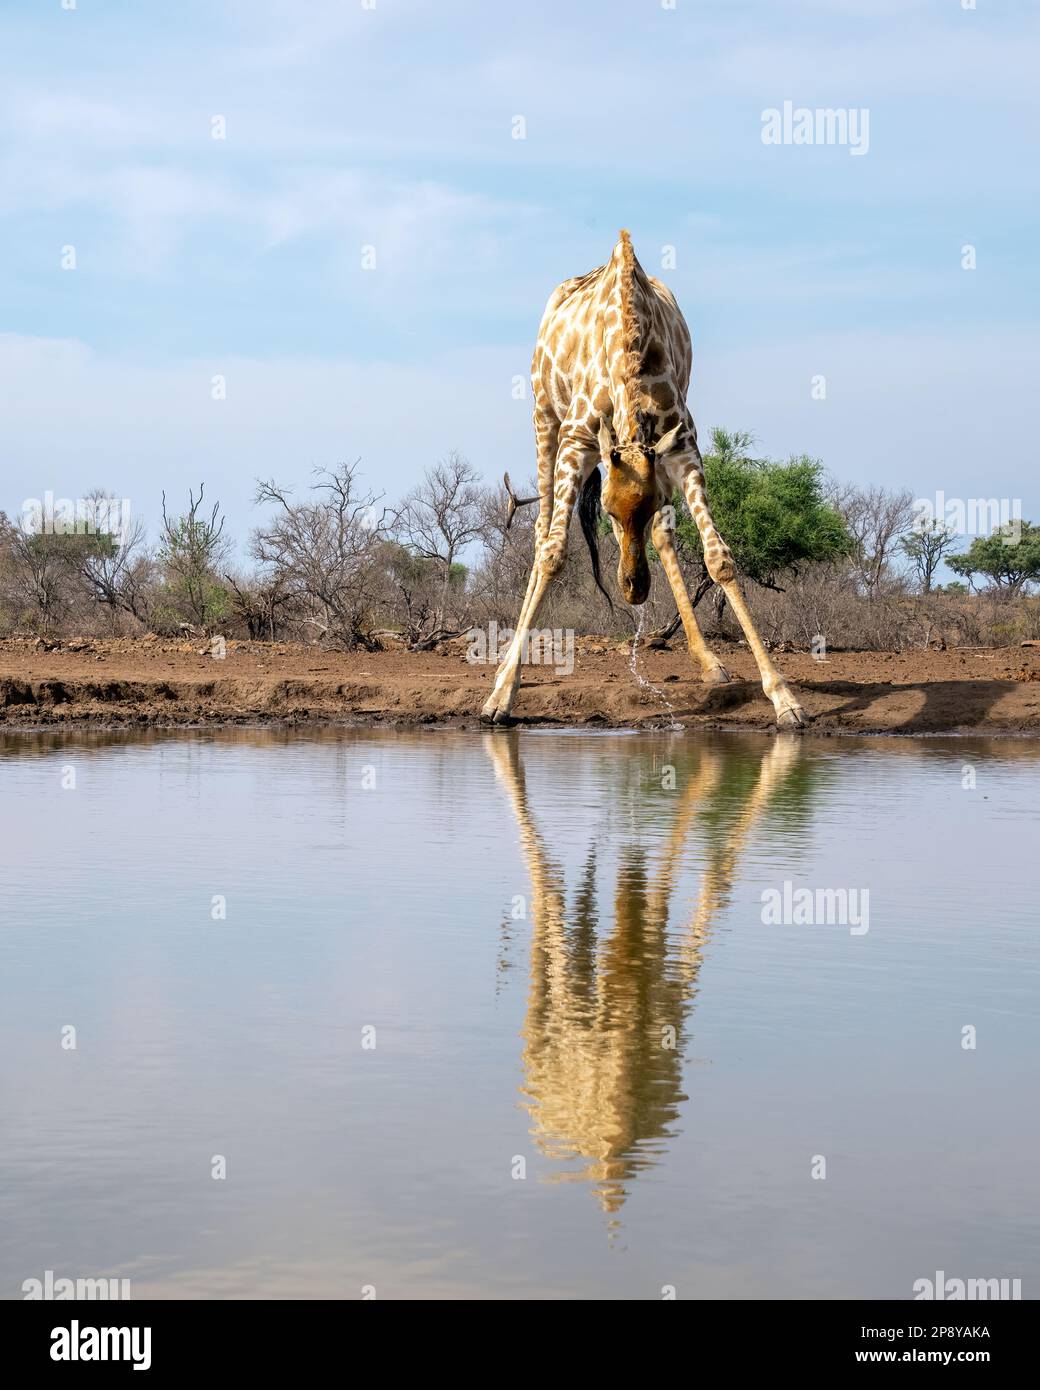 Lone Giraffe drinking from a Waterhole in Botswana, Africa Stock Photo